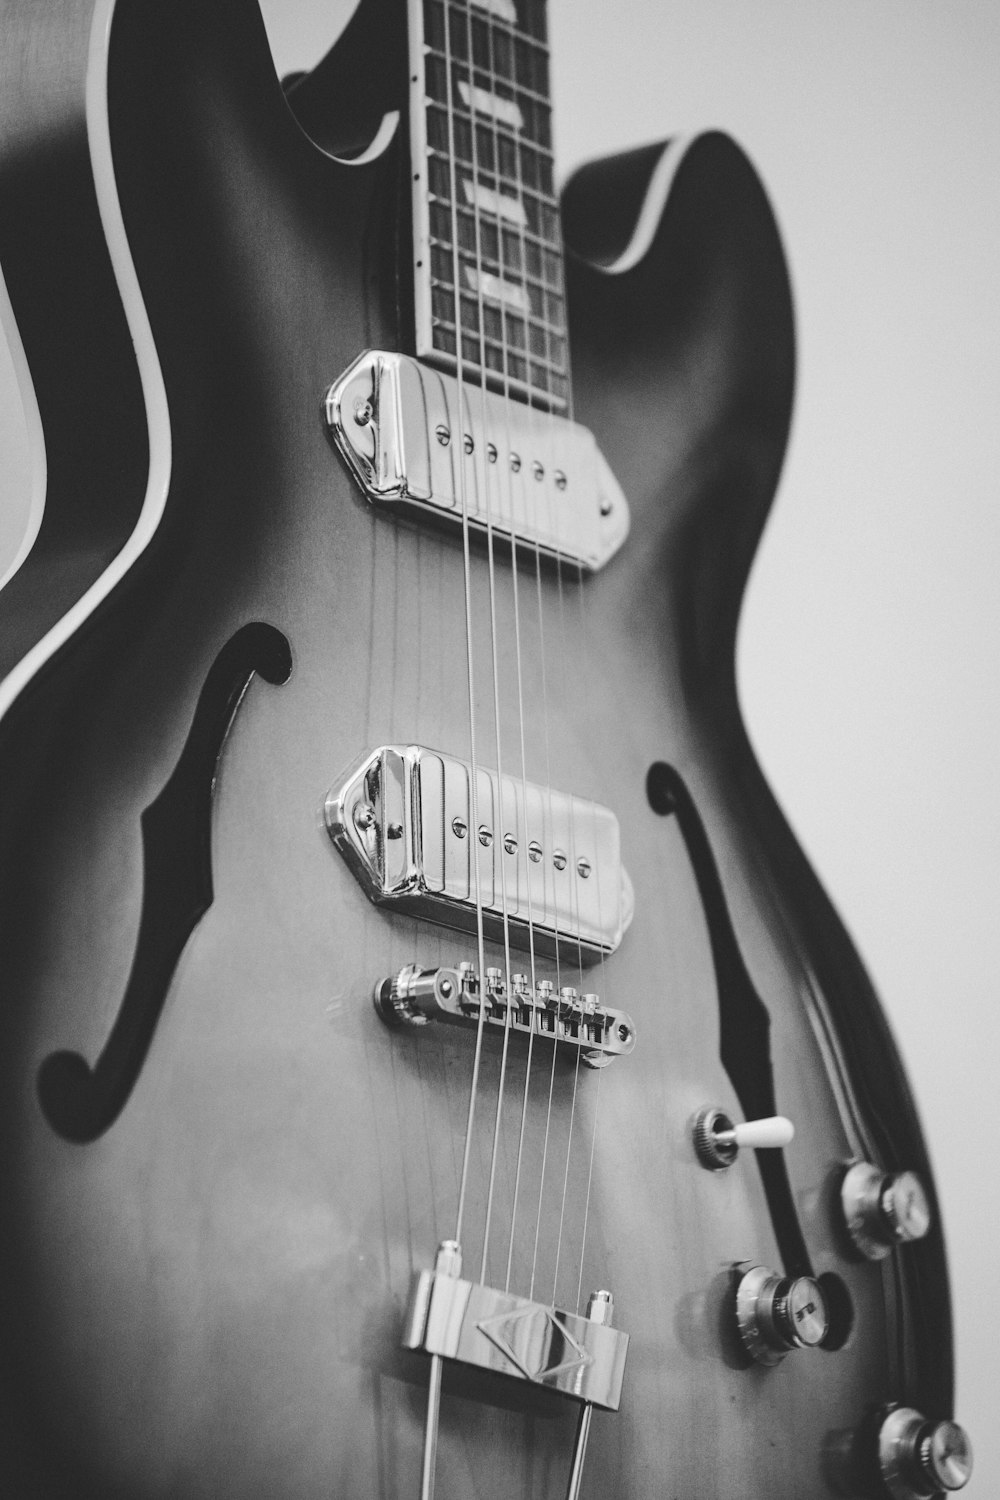 Foto in scala di grigi di chitarra jazz